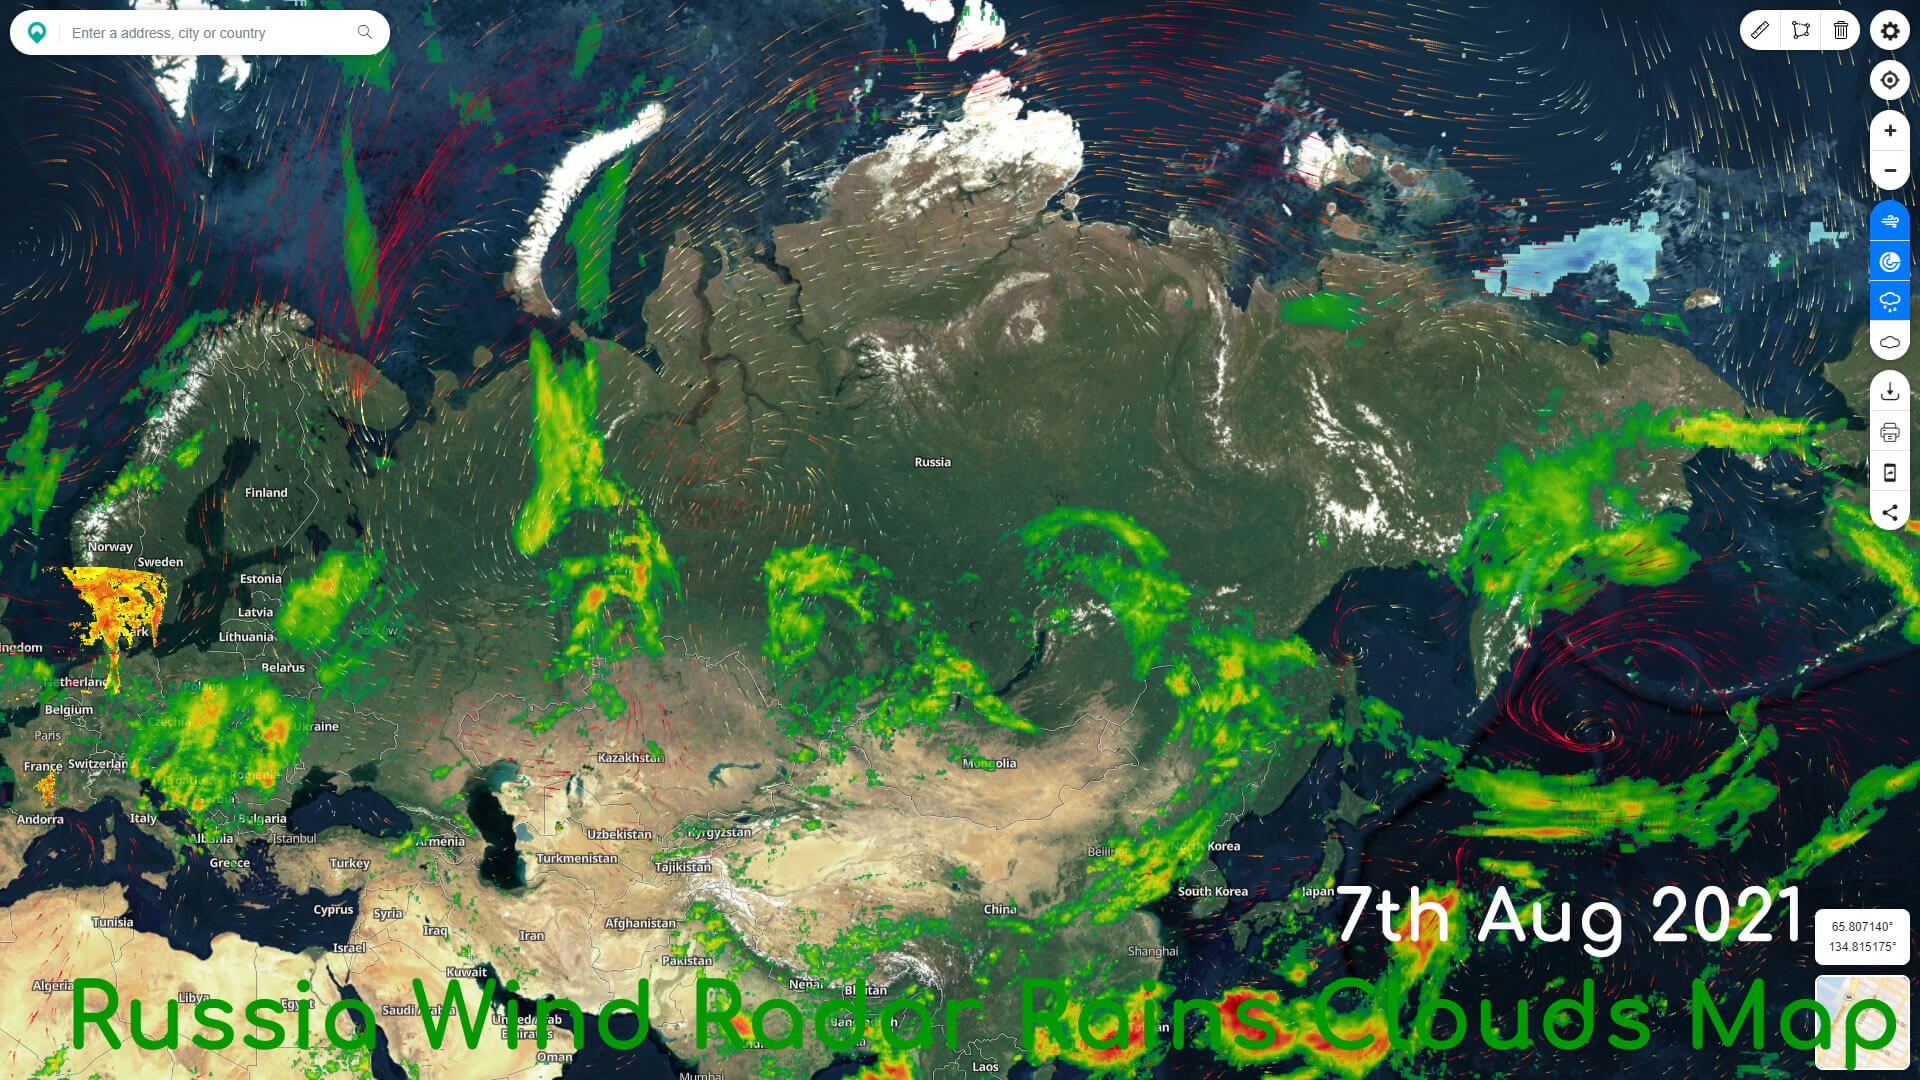 Russia Wind Radar Rains Clouds Map